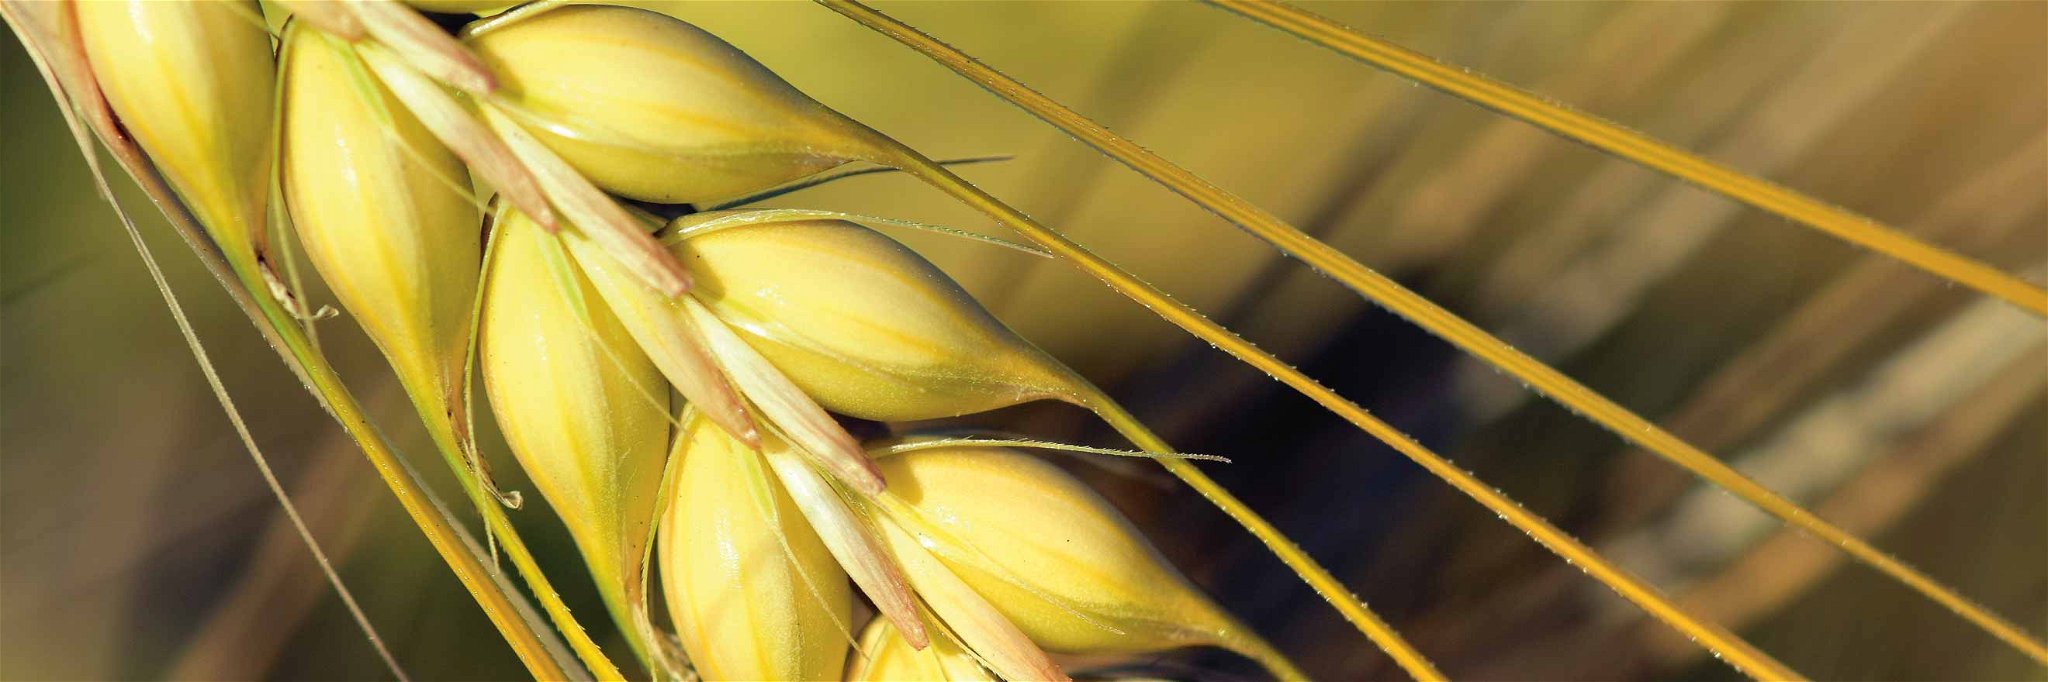 DNA-Sequenzen im Erbgut von Getreide können mit einer sogenannten »Genschere« bearbeitet werden.